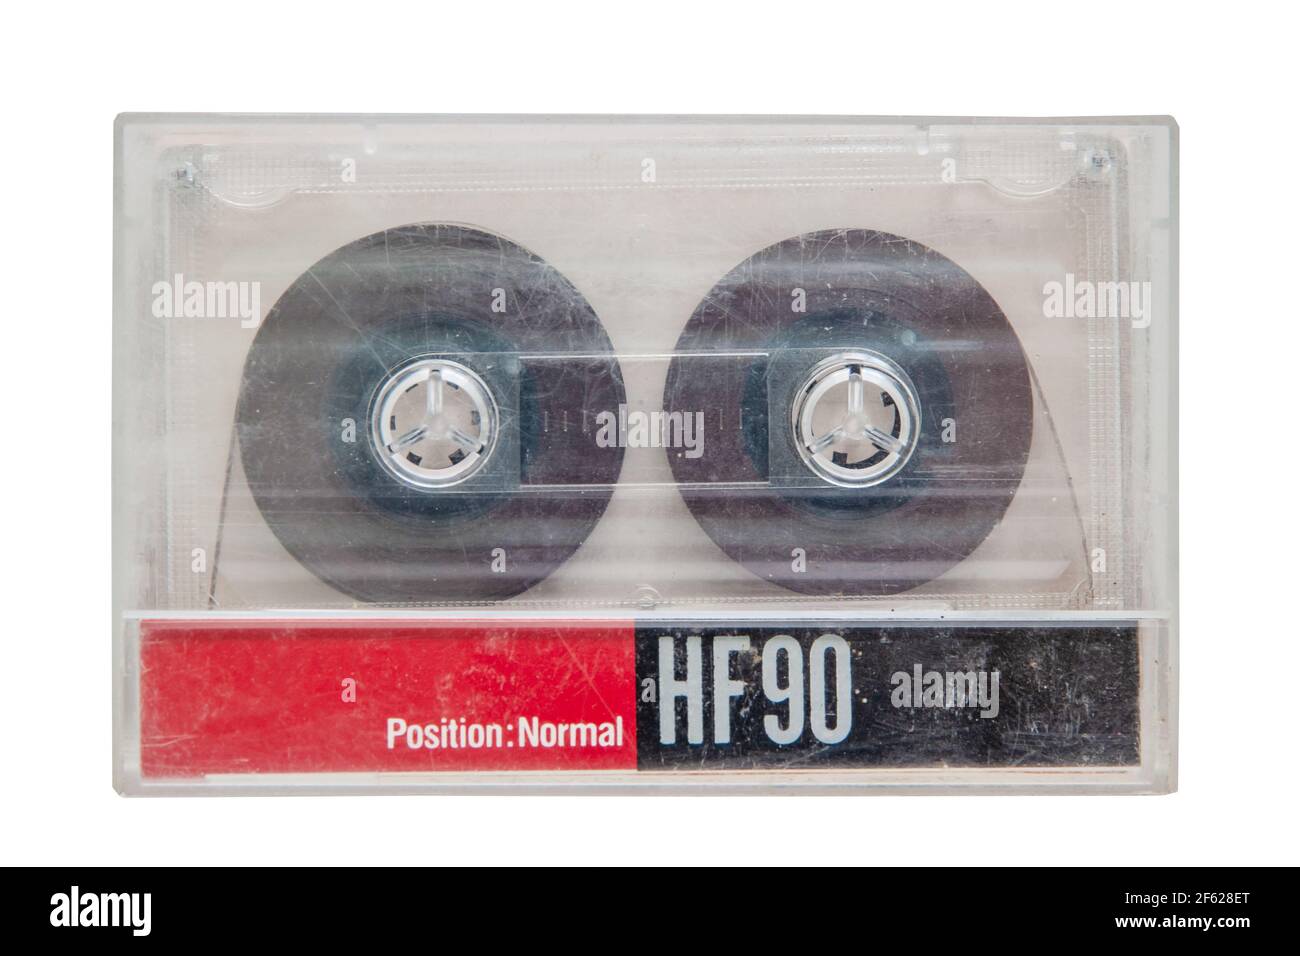 Une cassette audio transparente usée et rayée dans un boîtier de cassette à dosette isolé sur un fond blanc. Gros plan Banque D'Images